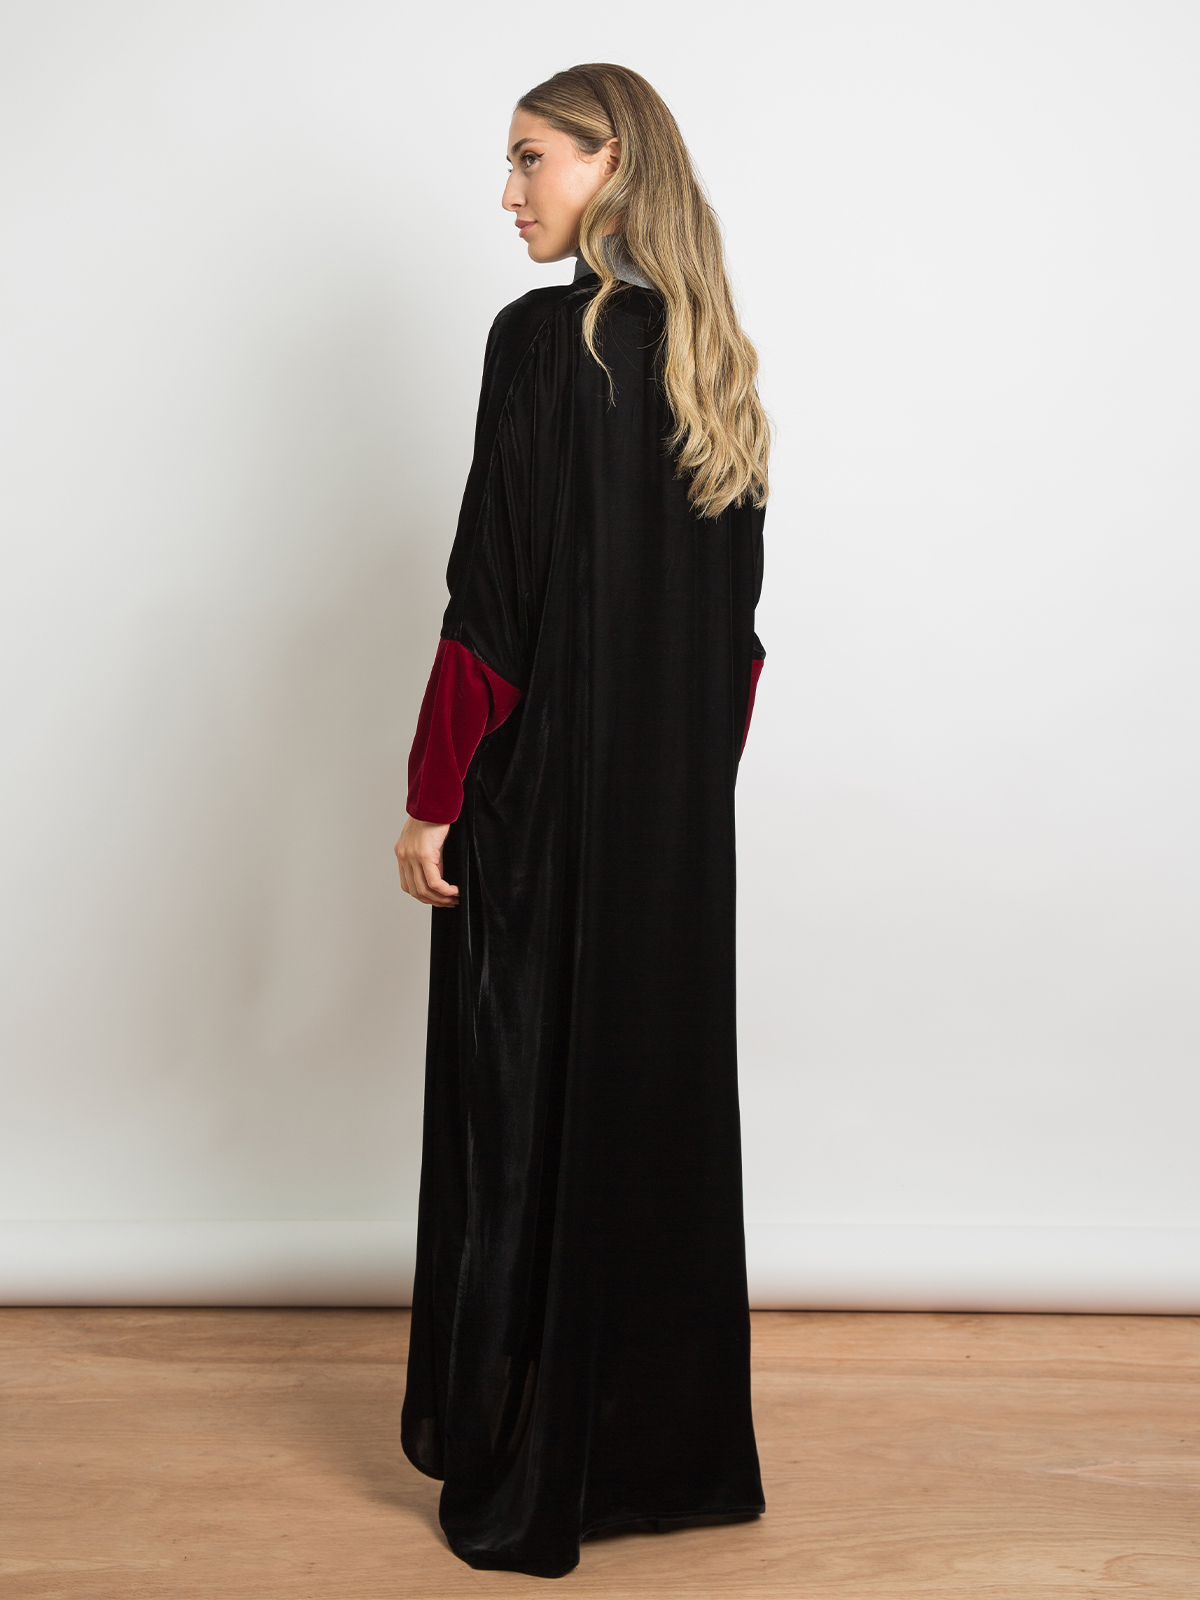 Black with Maroon Sleeves - Half Bisht Long Open Abaya in light Velvet